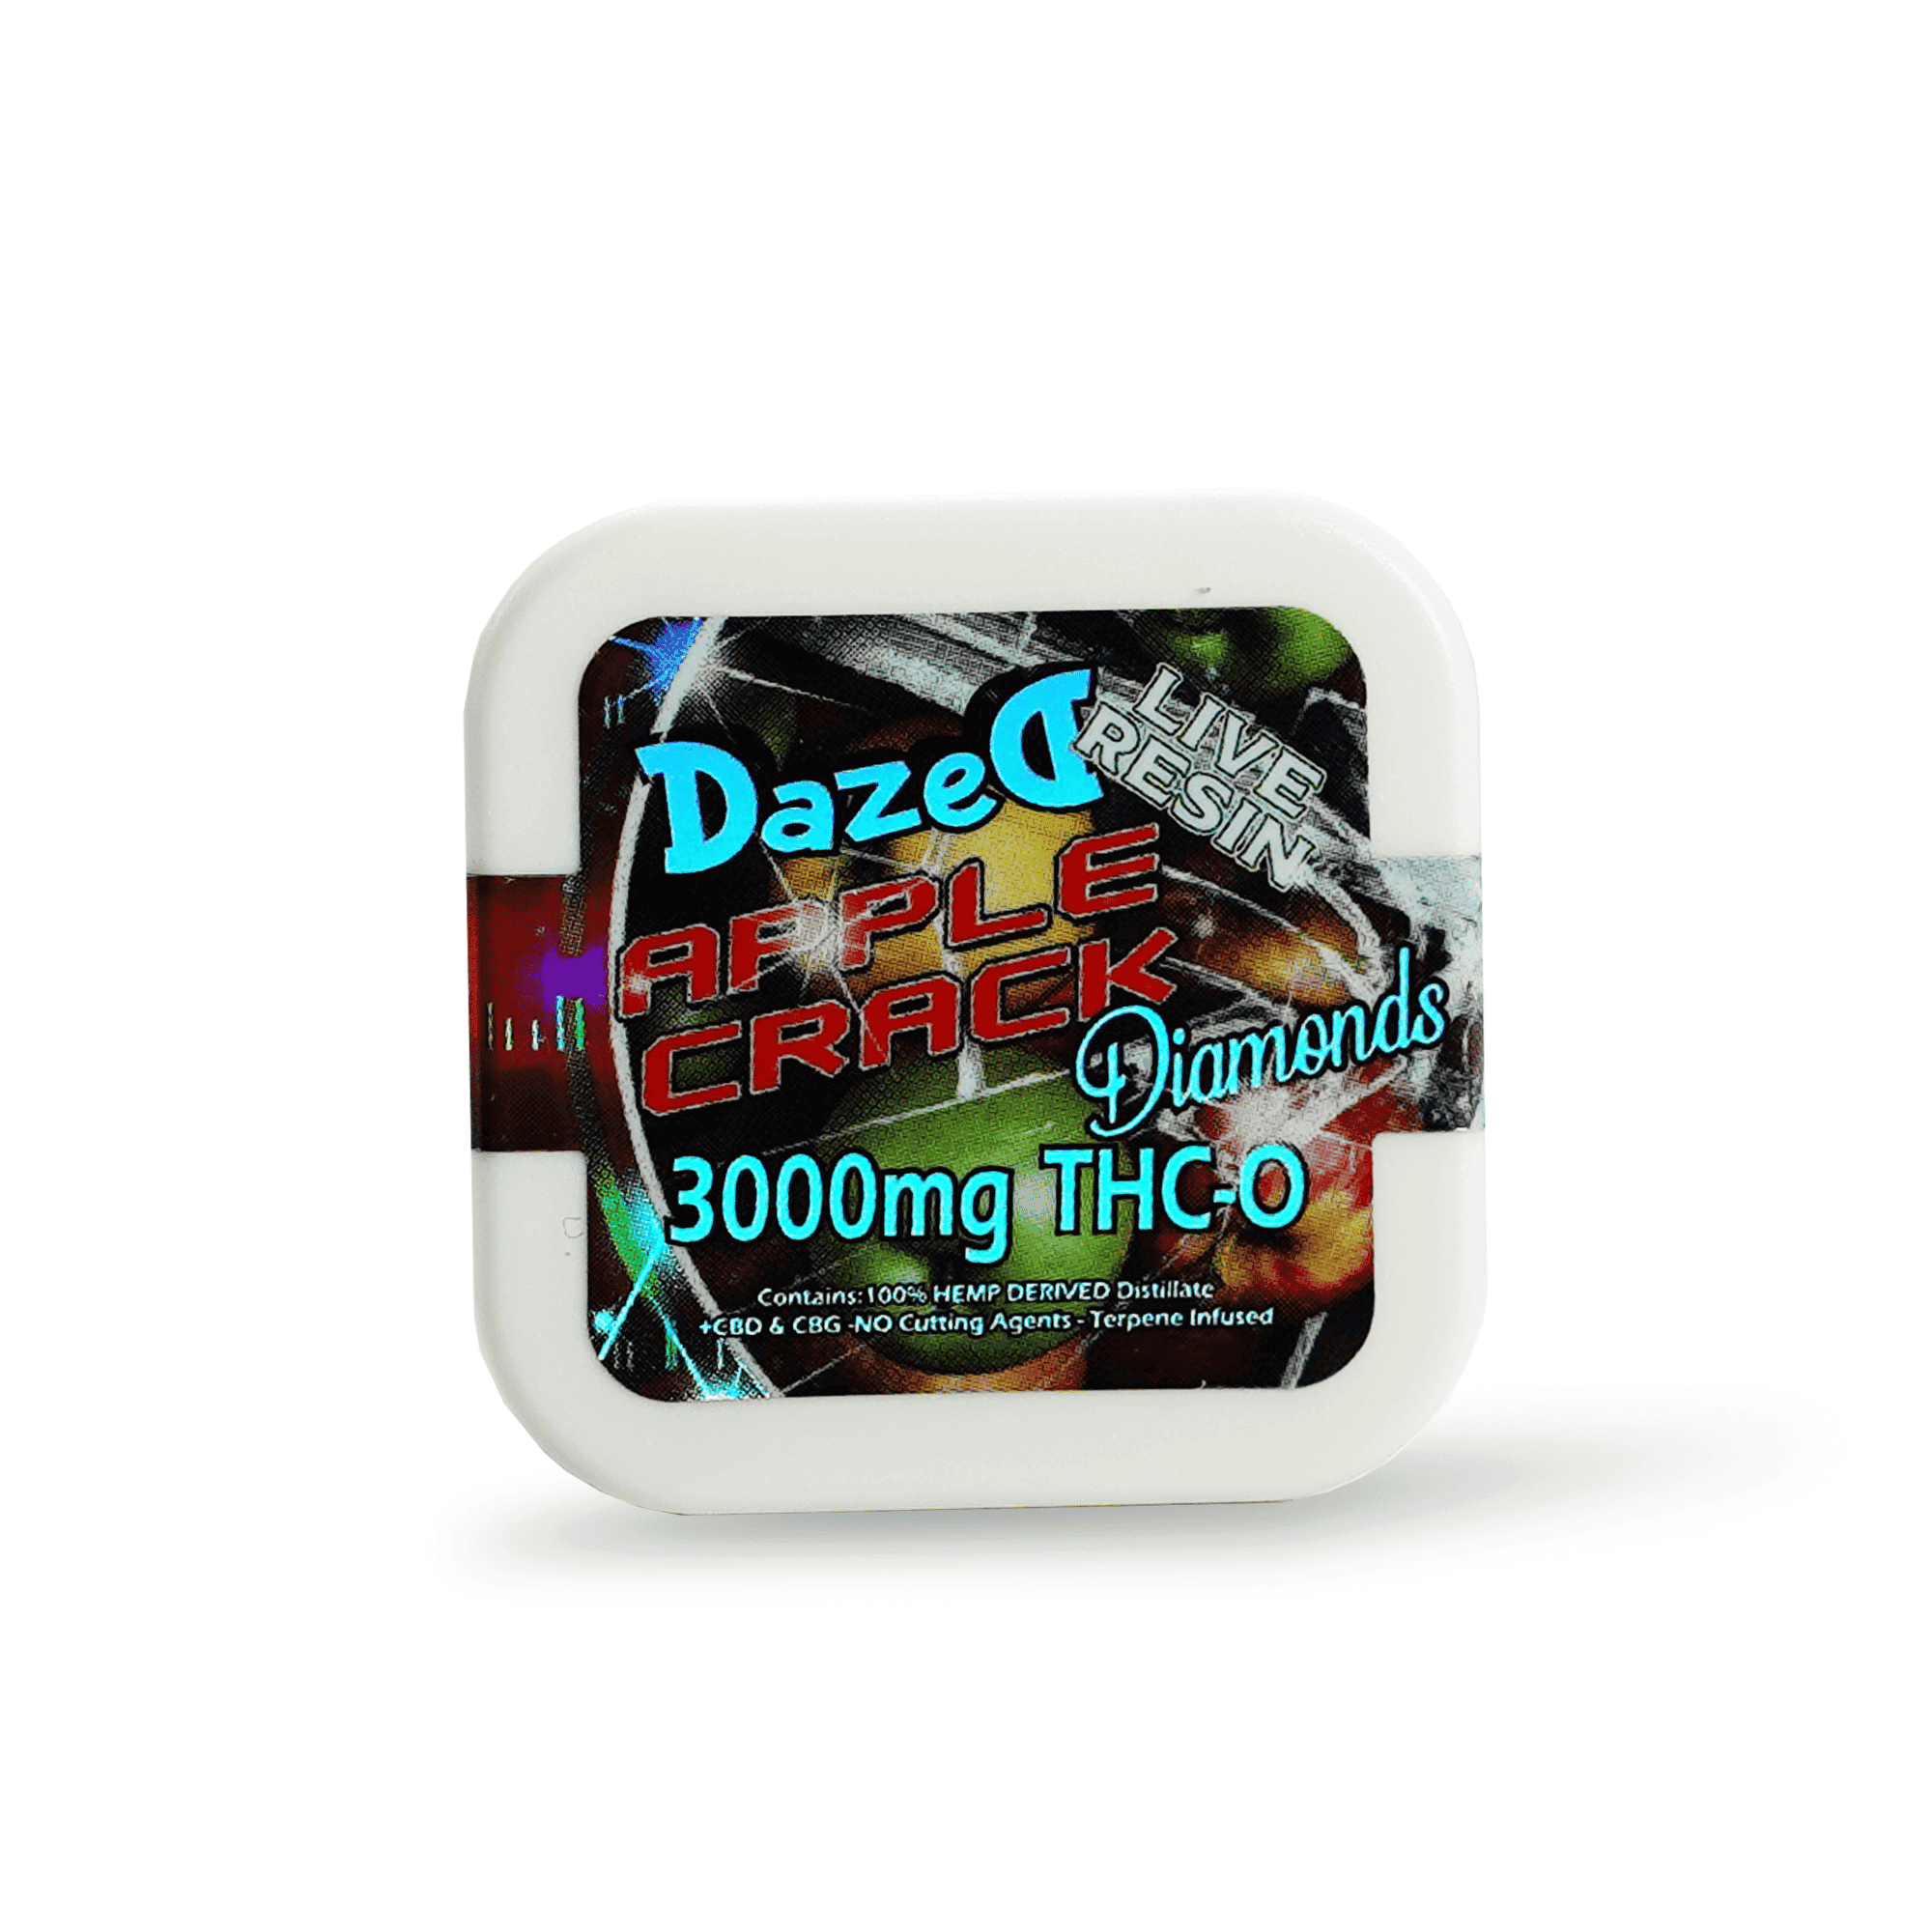 DazeD8 Apple Crack Live Resin Delta 8 THC-O Diamond Dab (3g) Best Price